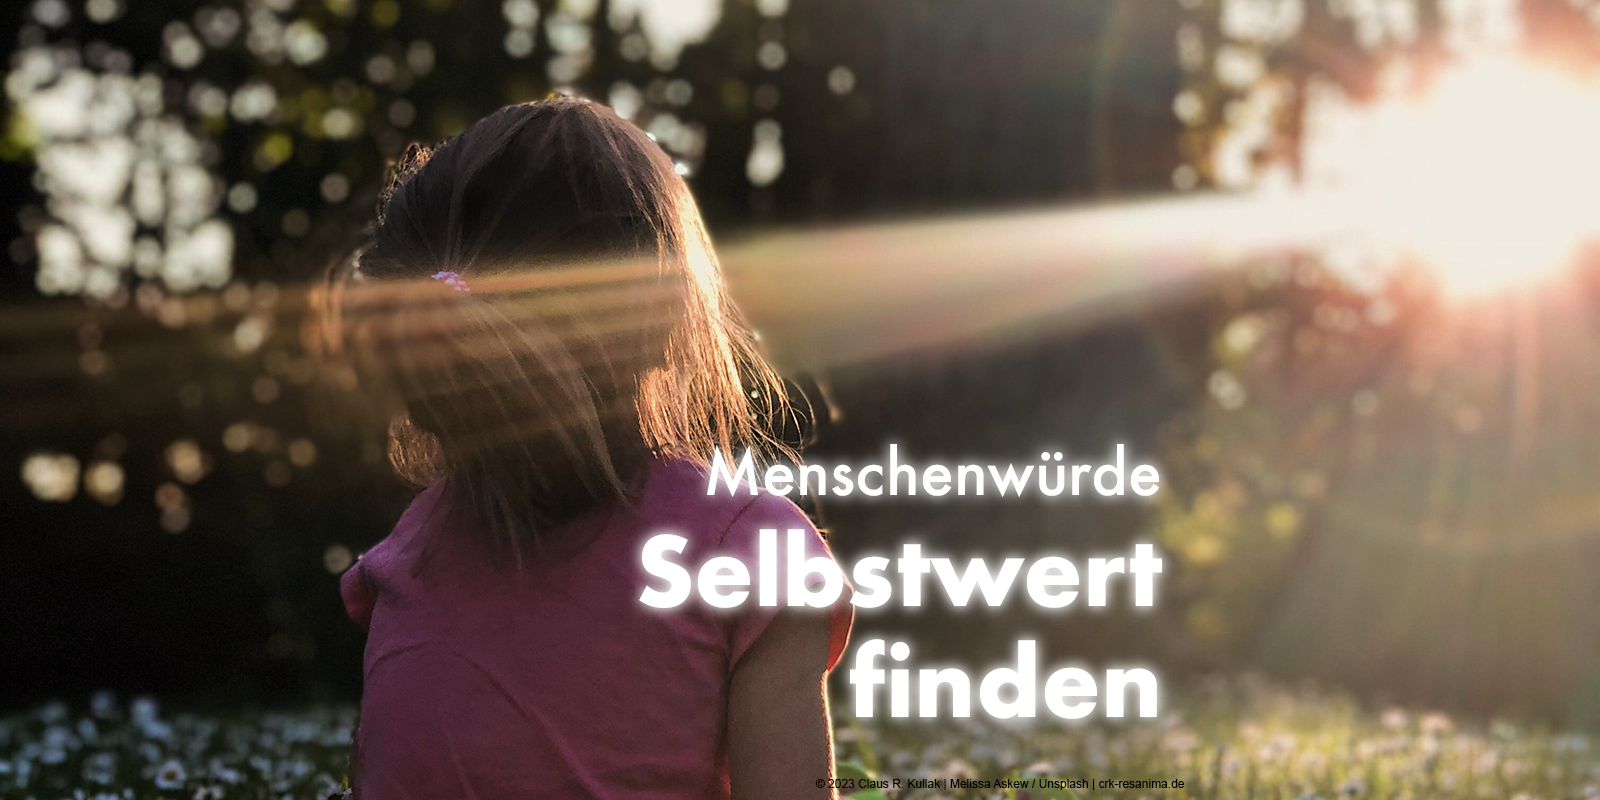 Ein kleines Mädchen sitzt mit dem Rücken zu uns auf einer Lichtung. Ein Sonnenstrahl fällt durch die Blätter auf sie. Darüber steht: "Menschenwürde: Selbstwert finden" | Claus R. Kullak | Melissa Asket / Unsplash | crk-resanima.de